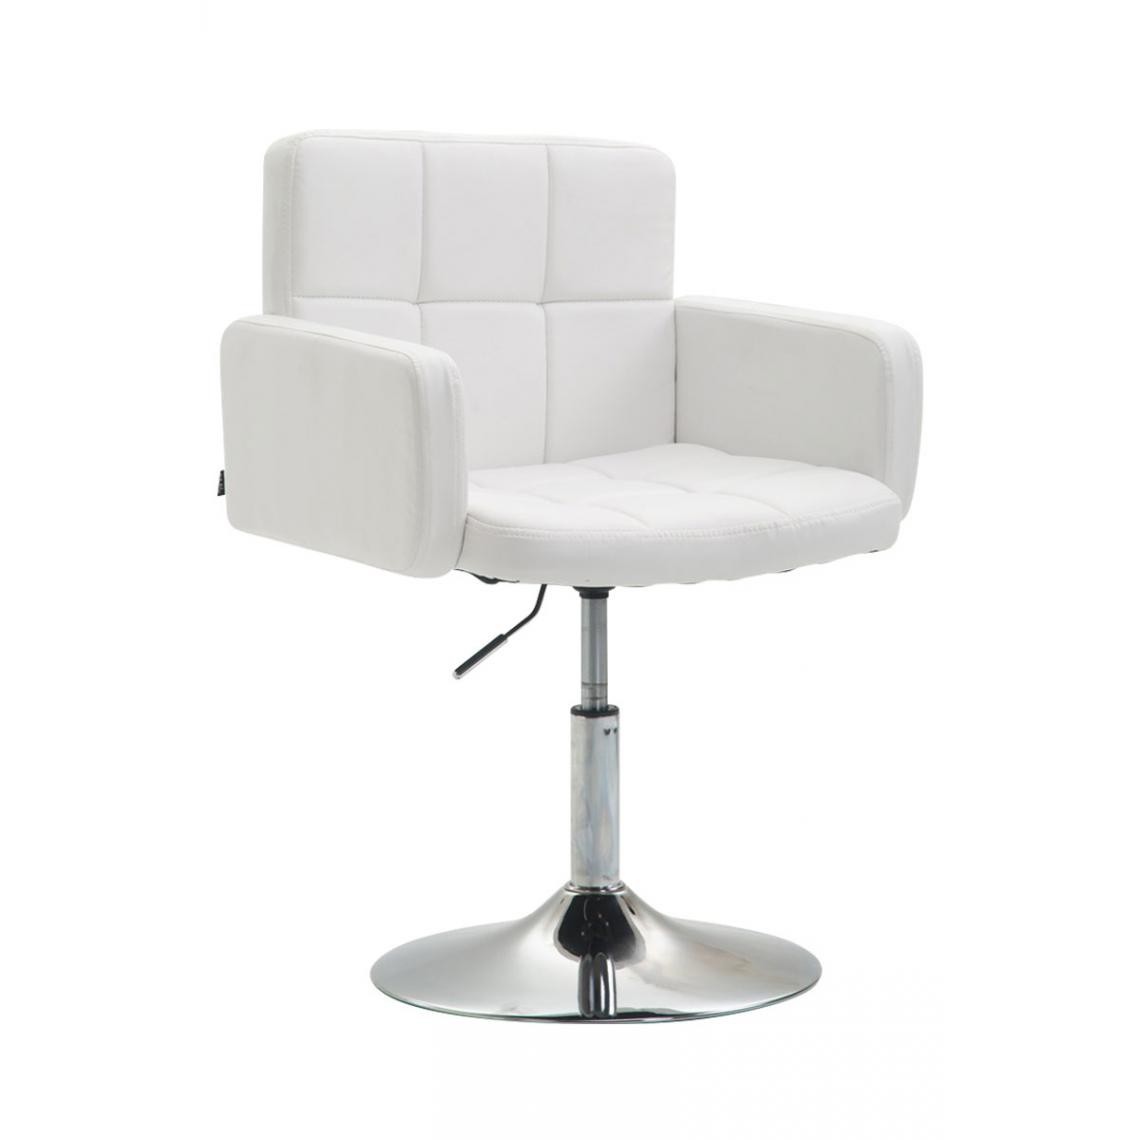 Icaverne - Splendide Chaise longue famille Nouakchott Angeles en cuir synthétique couleur blanc - Transats, chaises longues